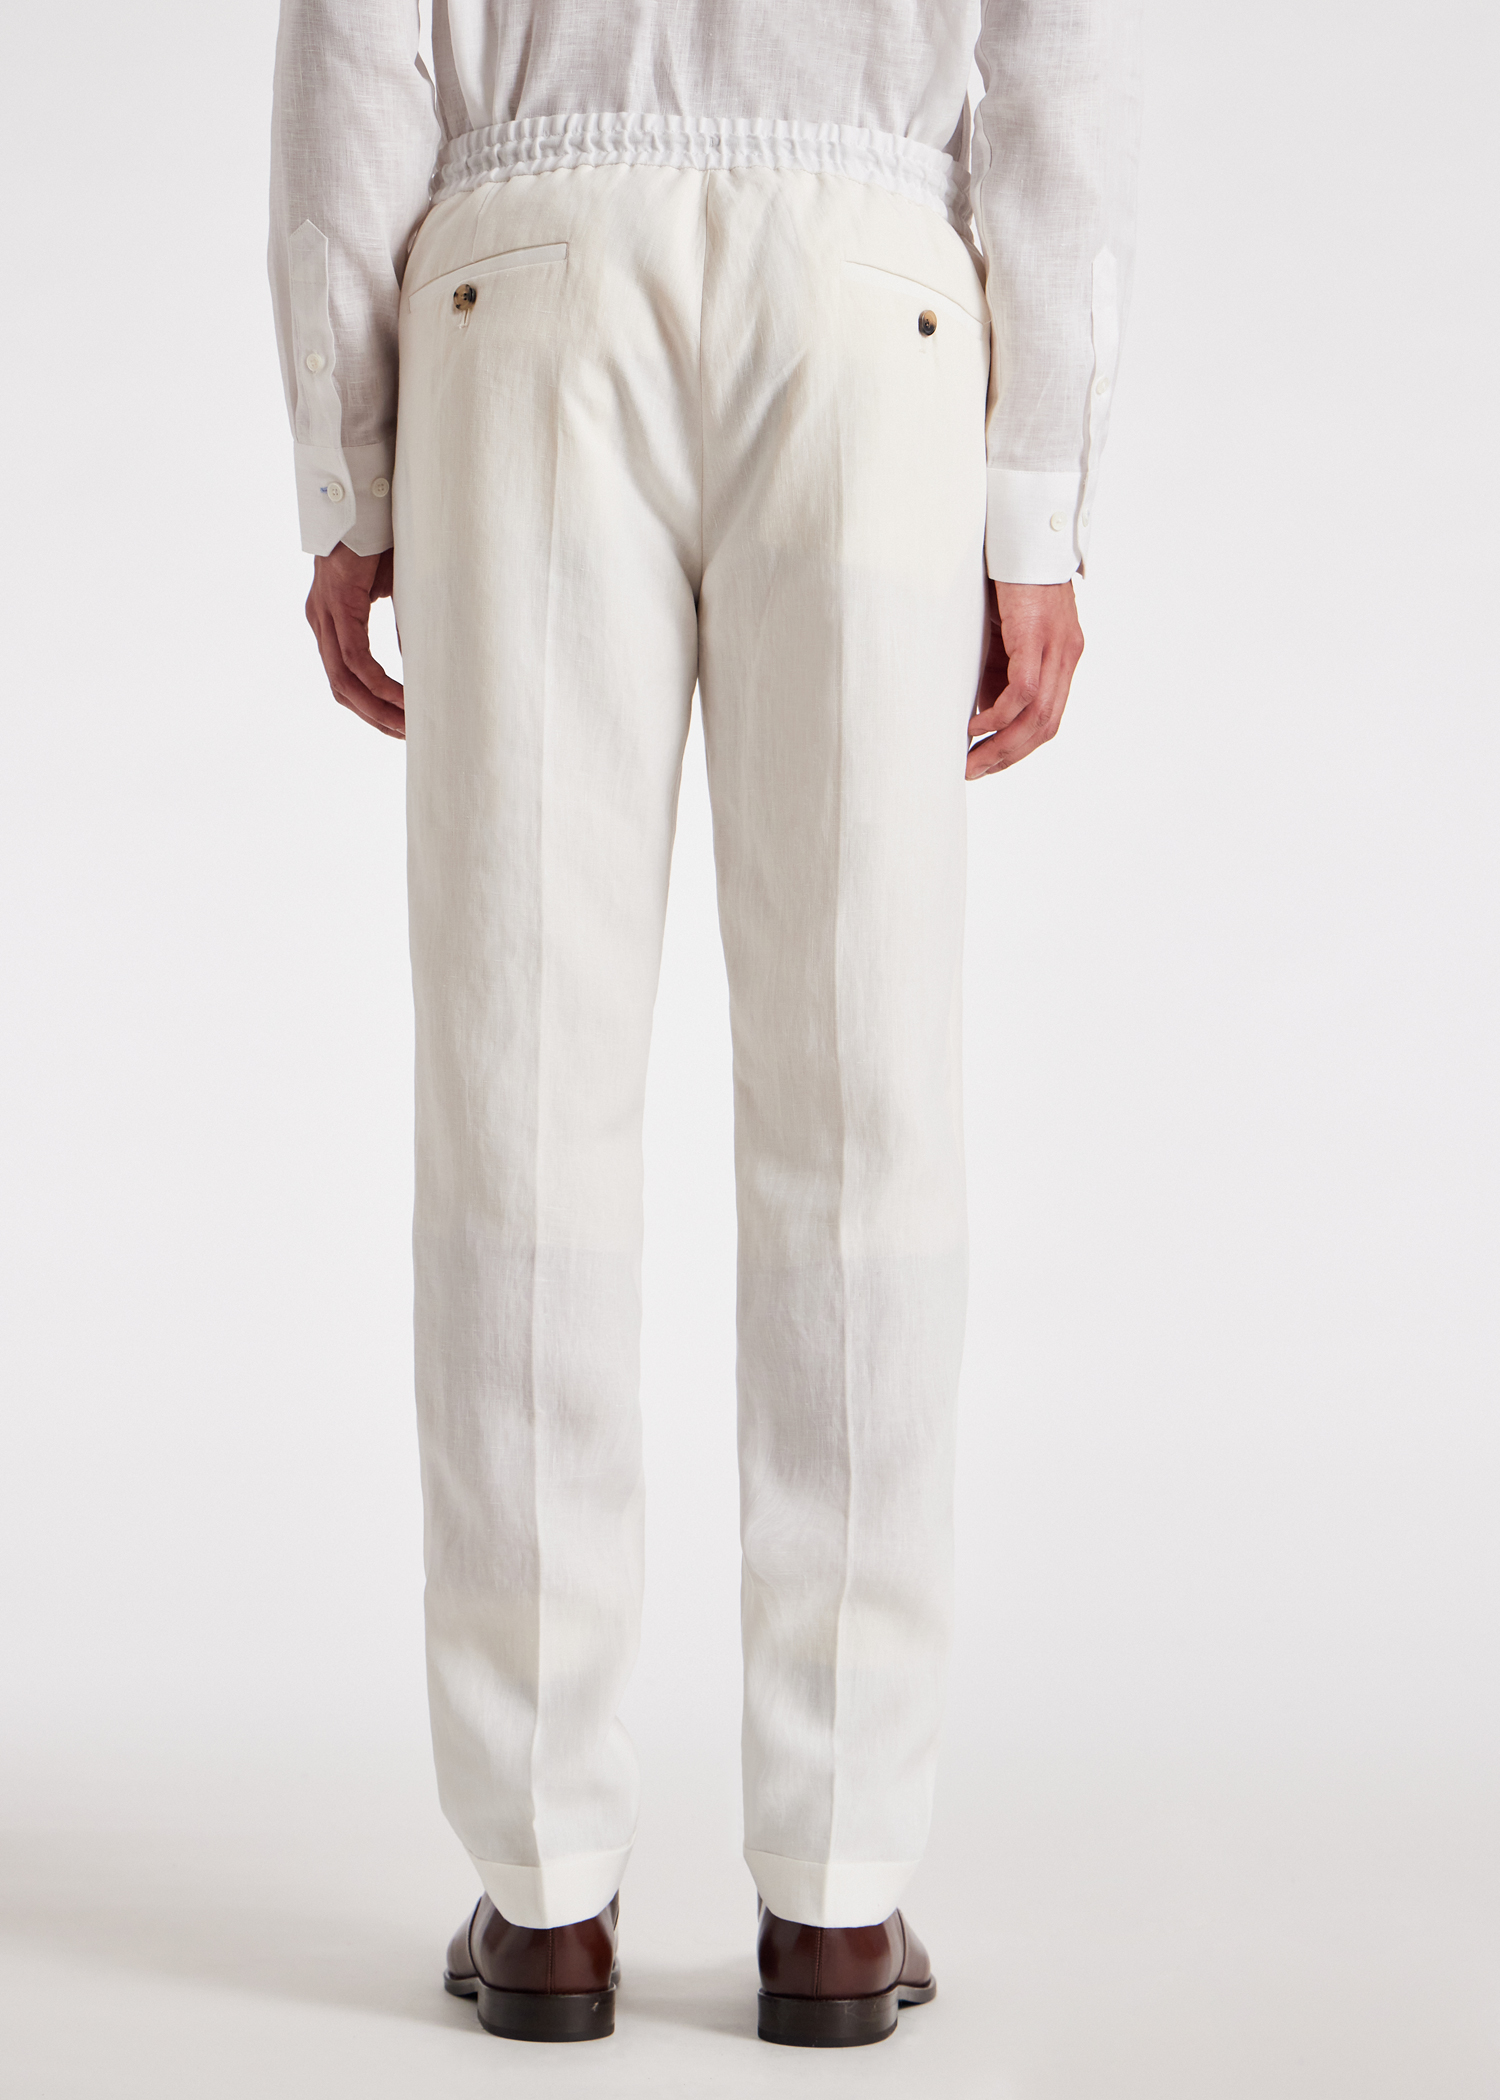 Designer Pants For Men | Paul Smith